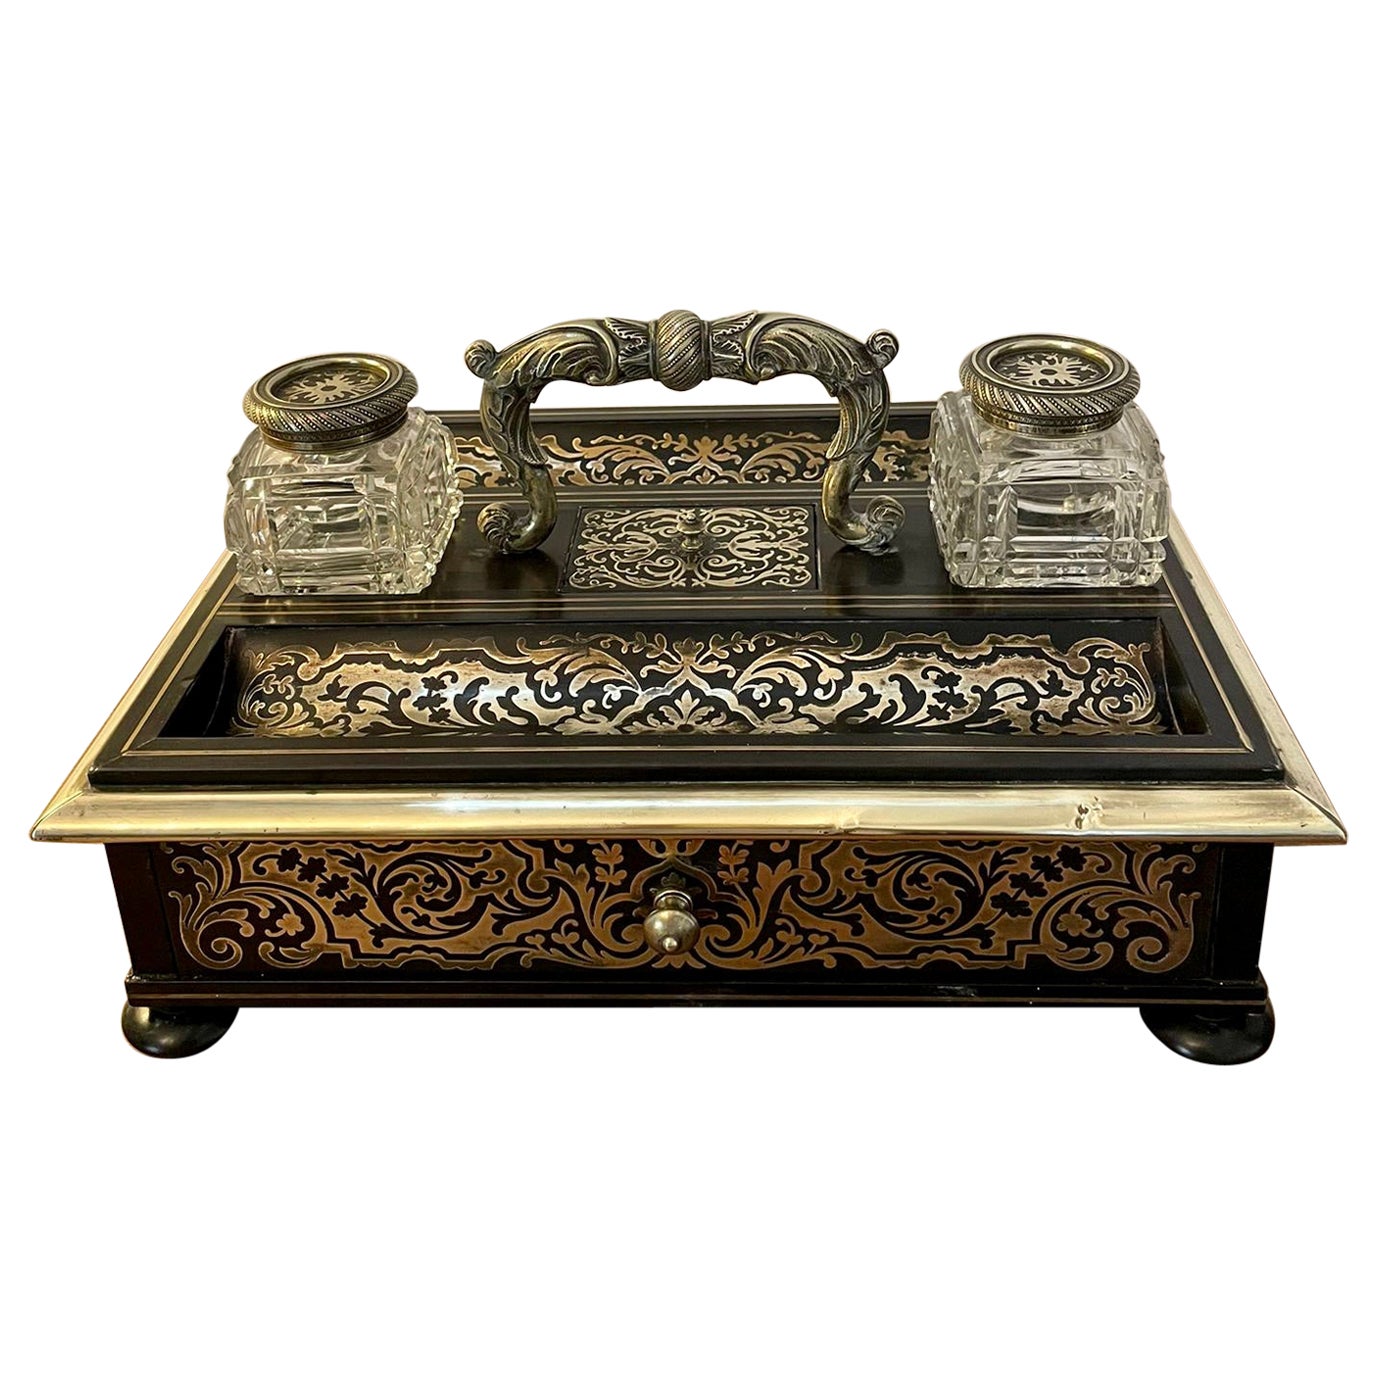 Antikes viktorianisches französisches Freistehendes Boulle-Schreibtisch-Set mit Intarsien von hoher Qualität